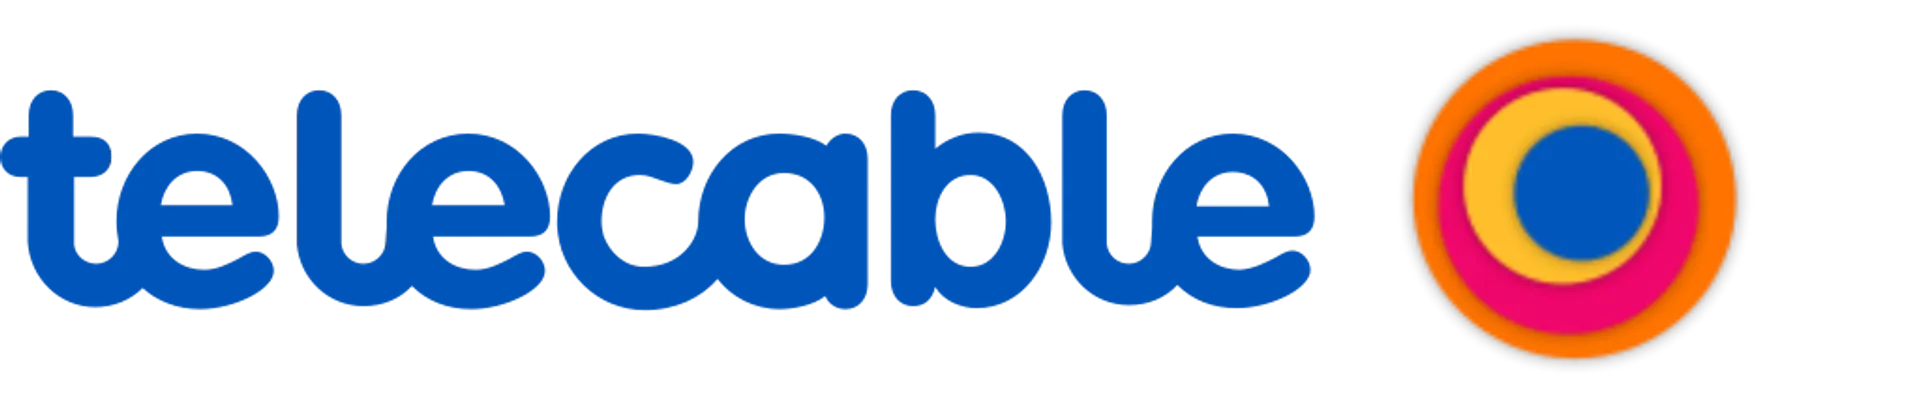 TELECABLE logo de catálogo